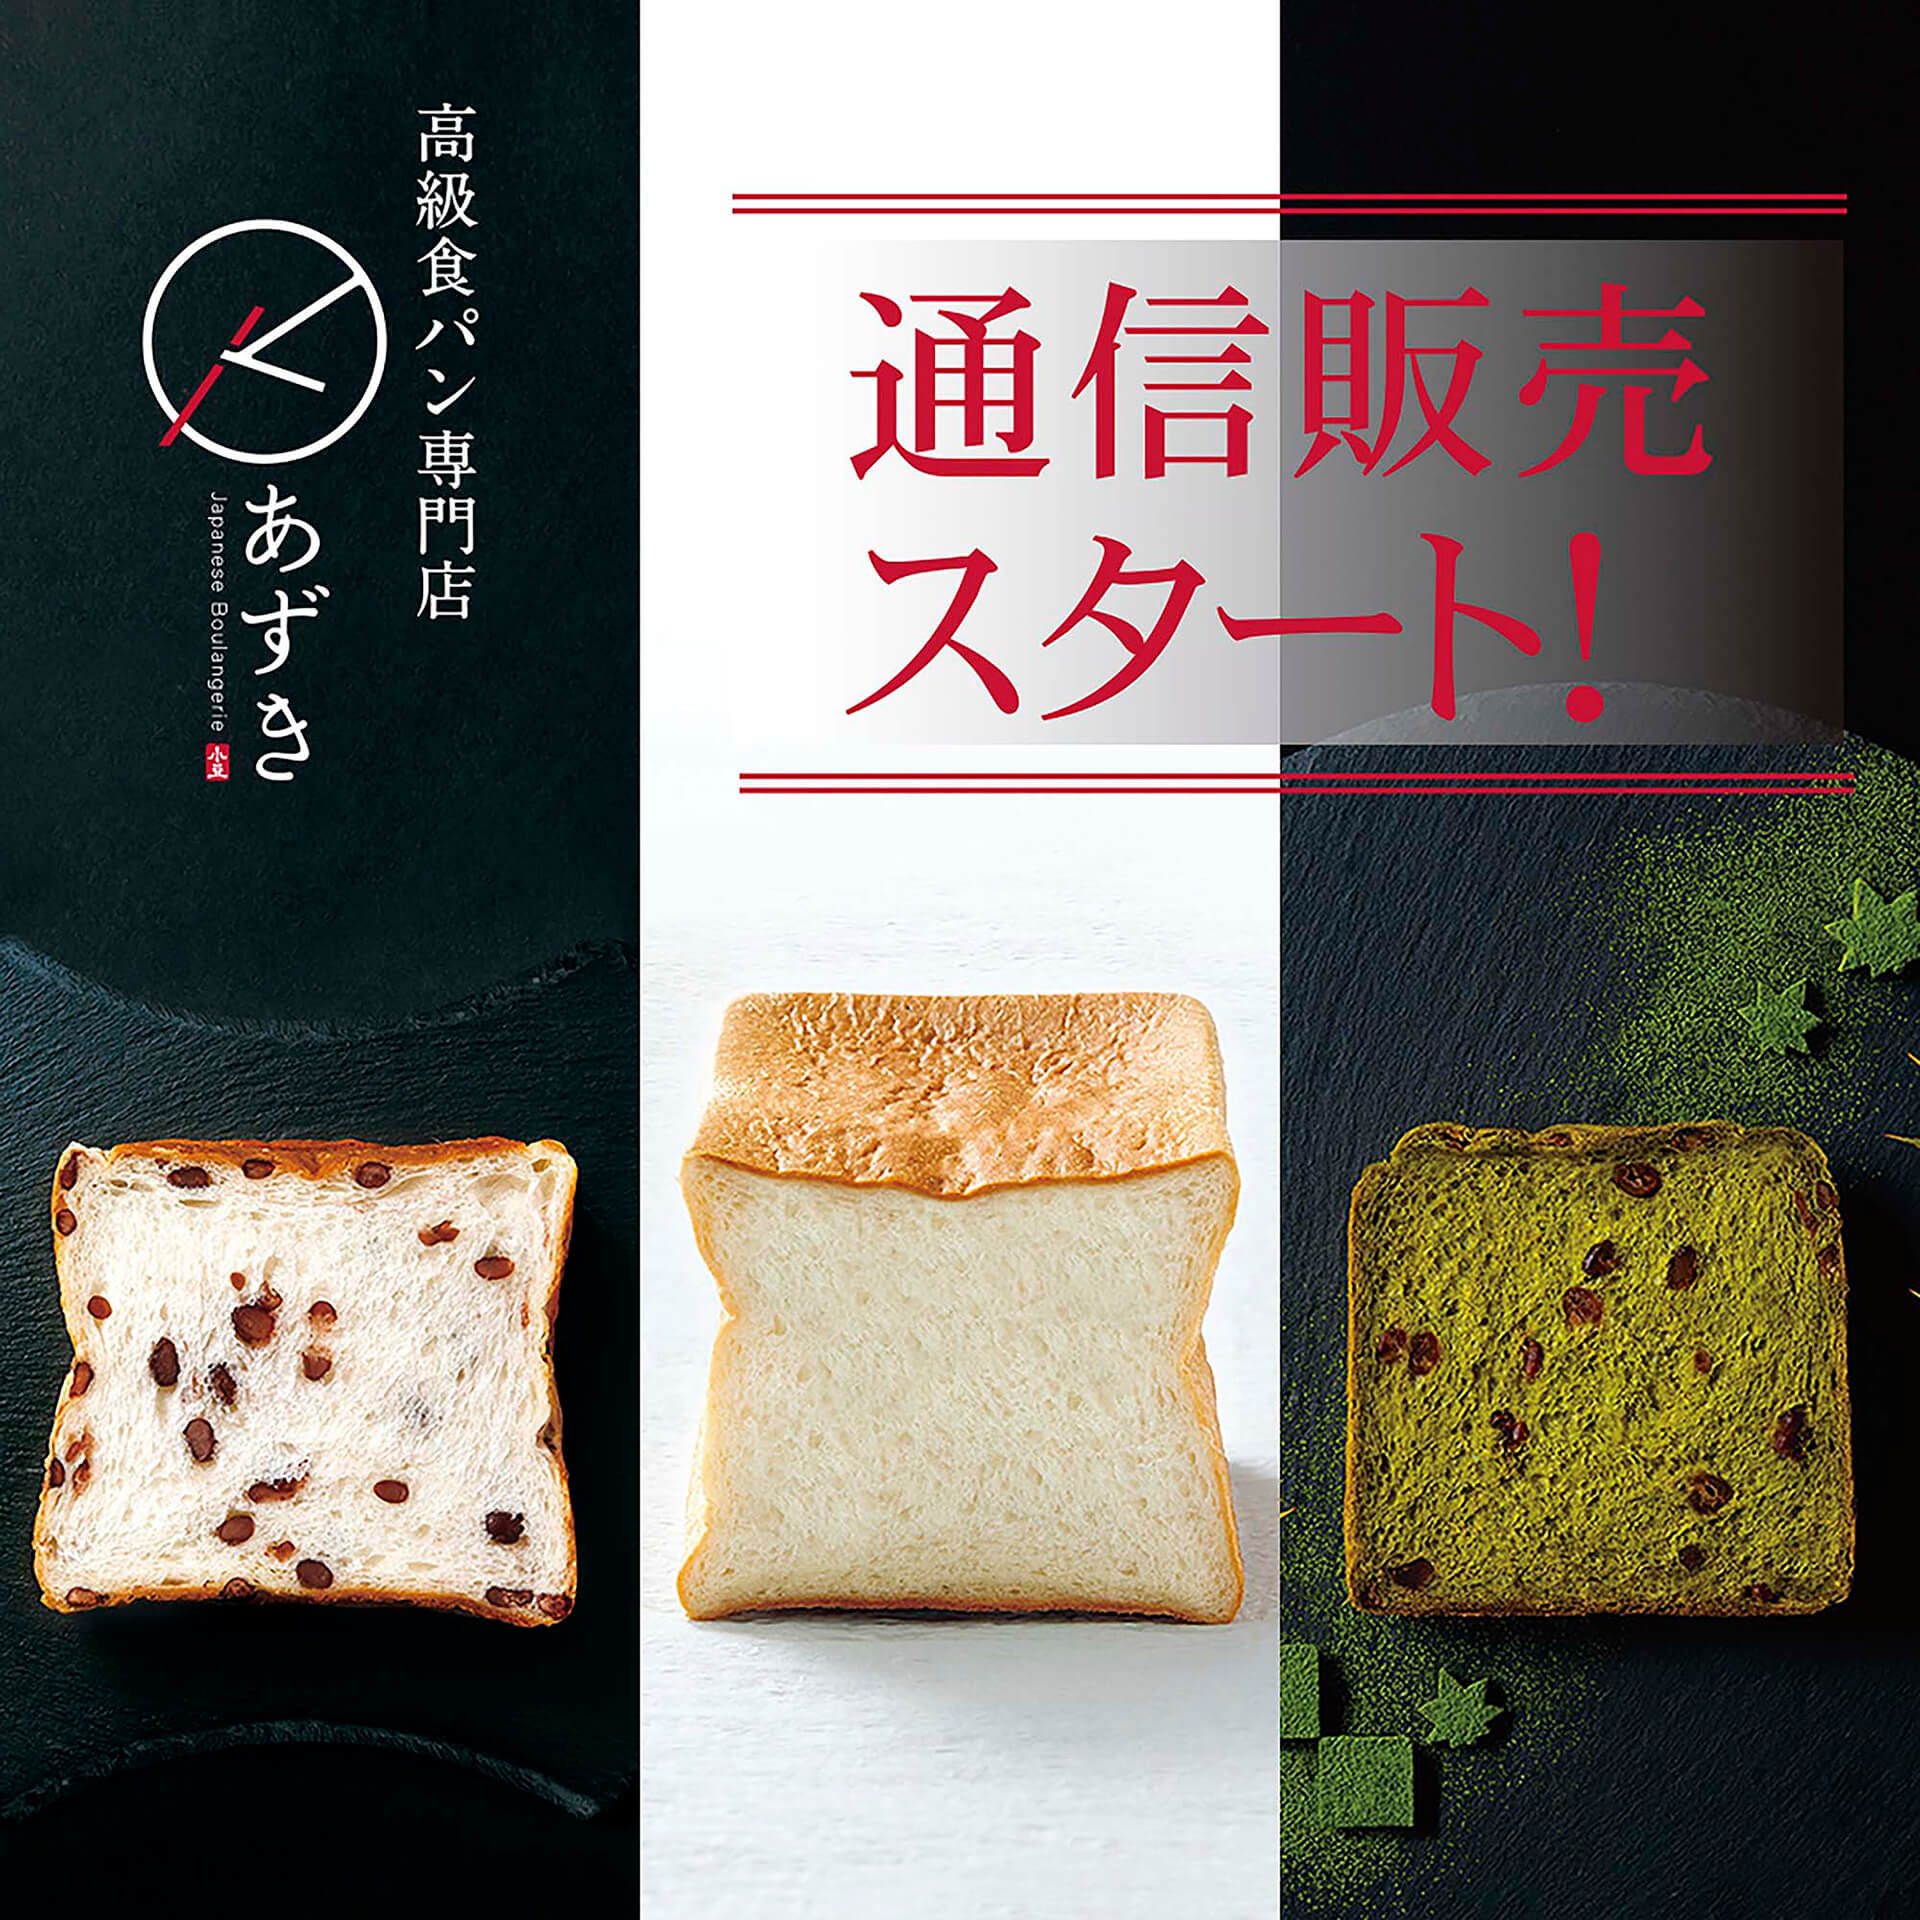 高級食パン専門店『あずき』通信バナー